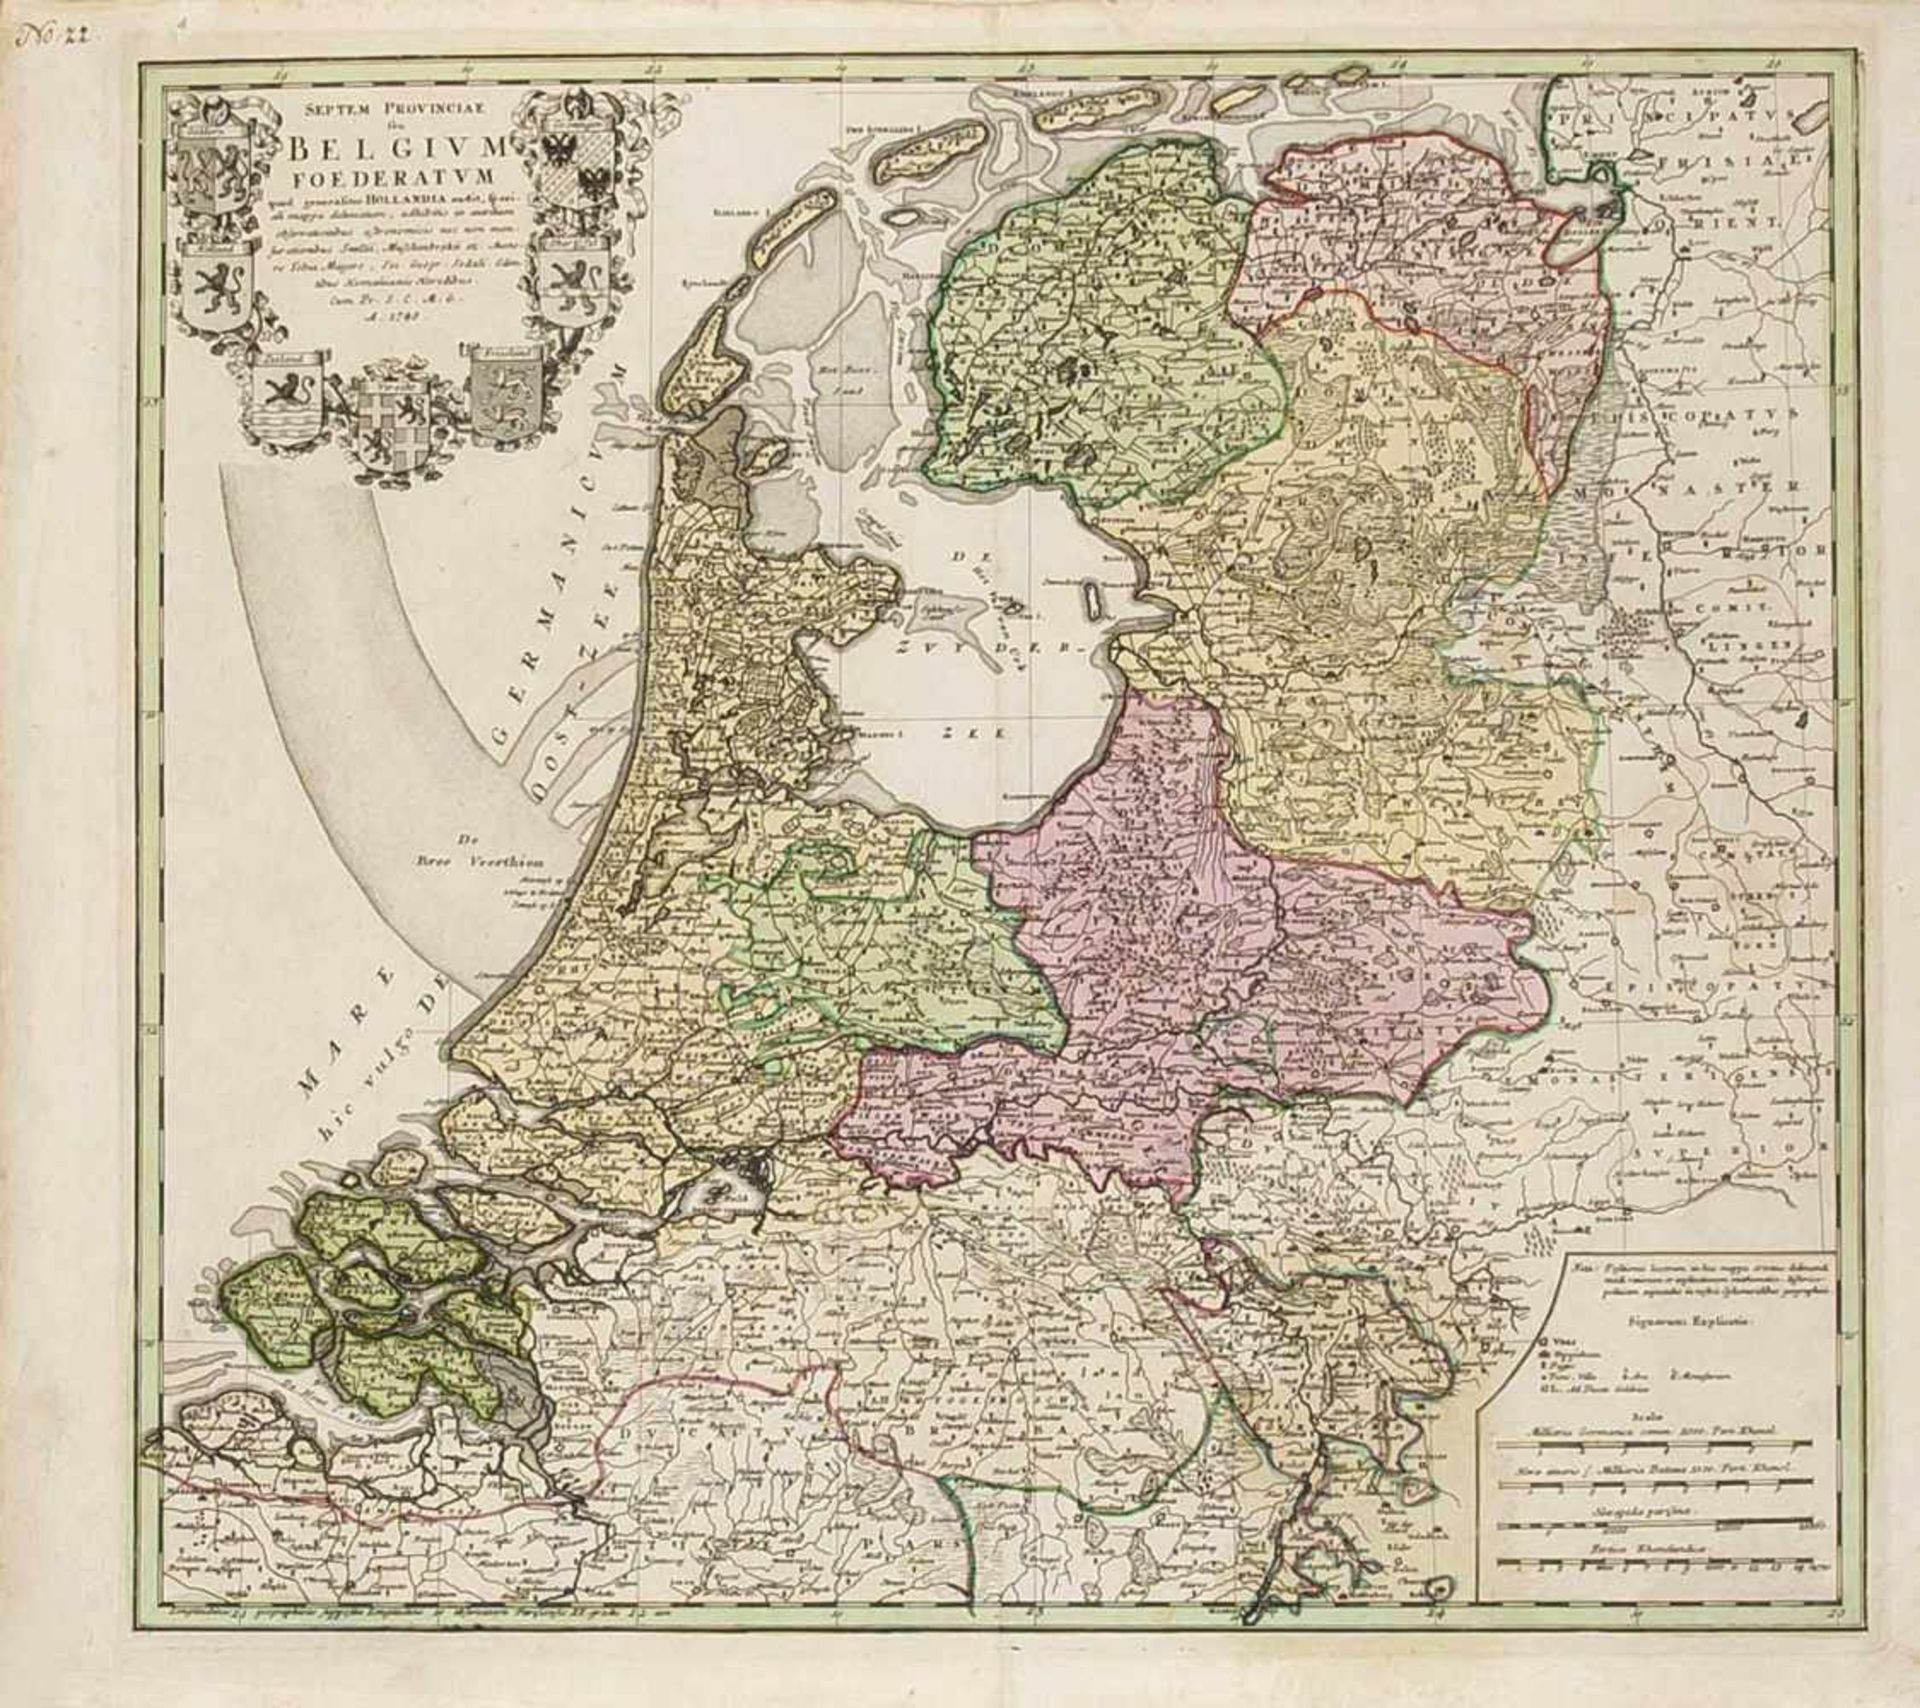 Historische Karte von Belgien und den Niederlanden, Homann um 1740, "Septem Provinciae seuBelgium